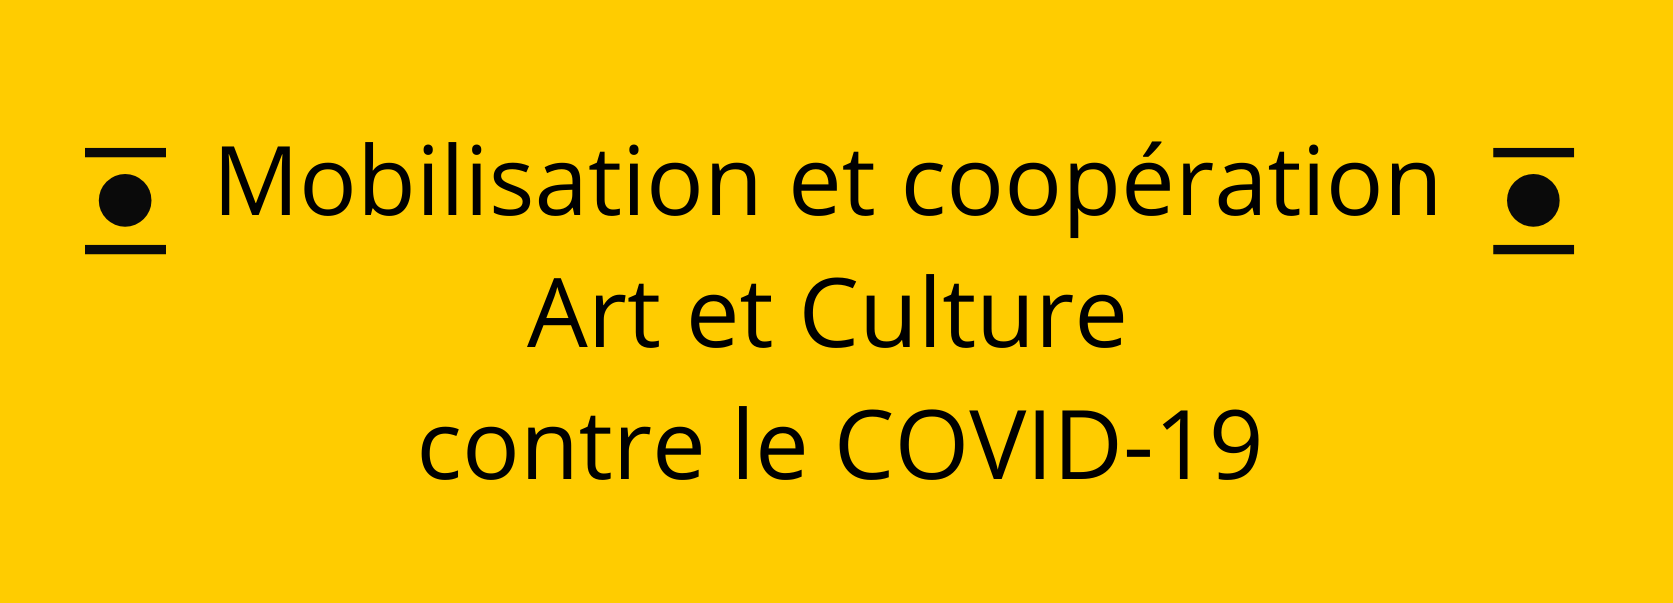 Movilización y Cooperación Arte y Cultura contra COVID-19